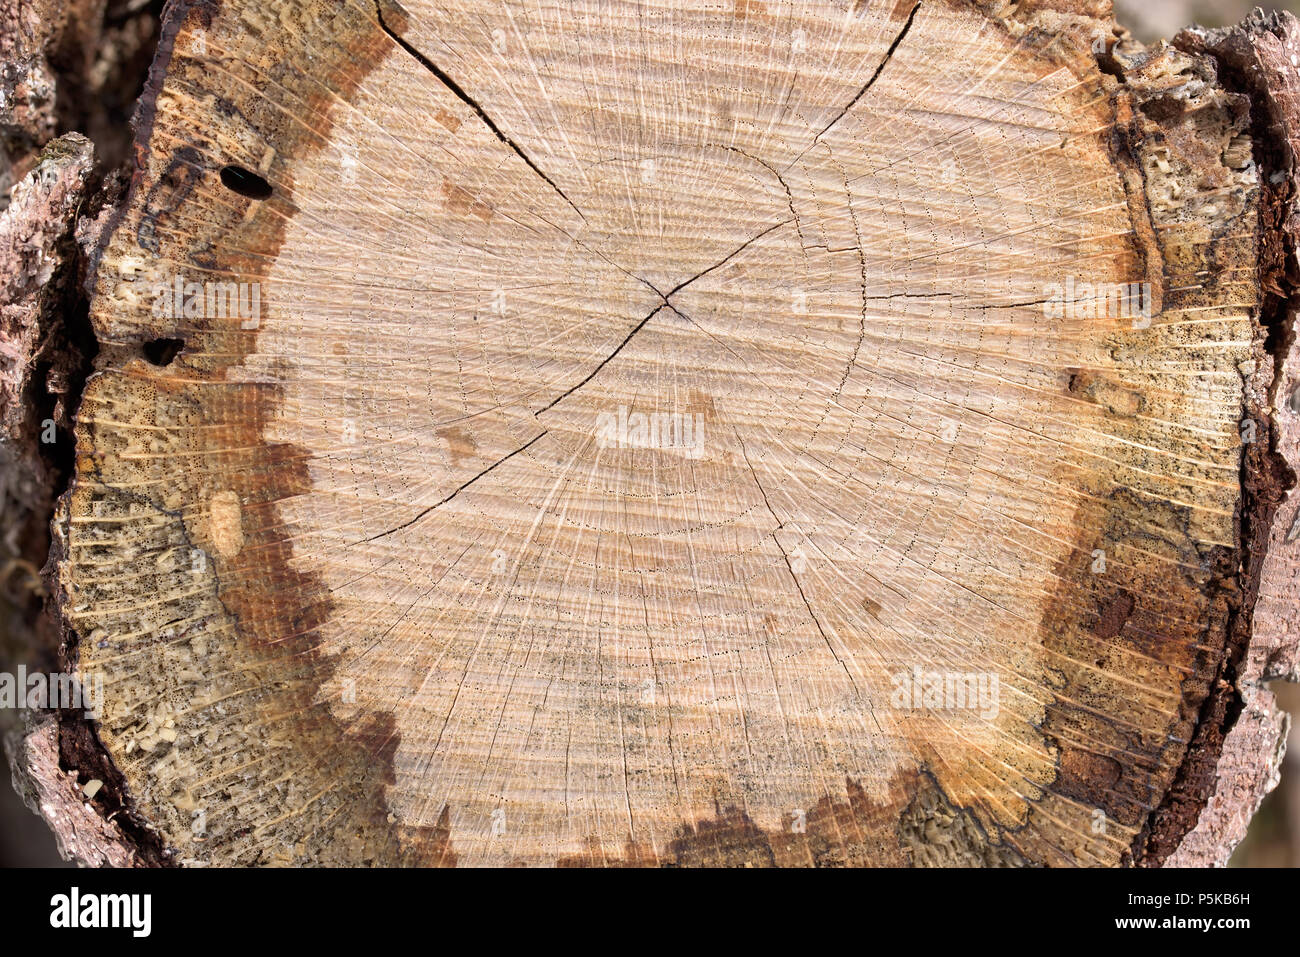 Baumstamm Scheibe. Baumstumpf gefällten Baum Stockfotografie - Alamy